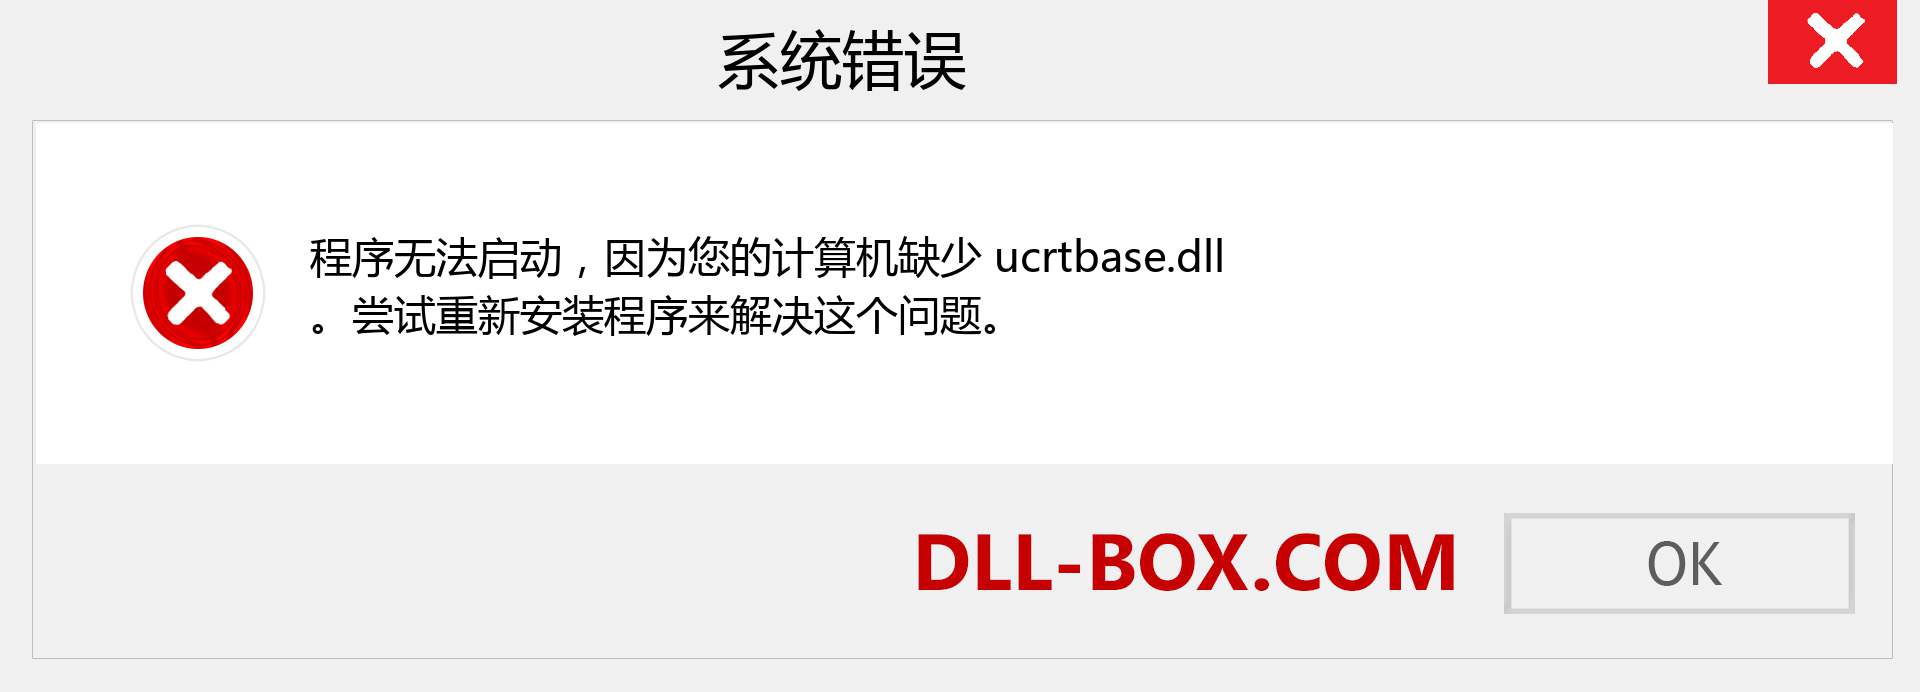 ucrtbase.dll 文件丢失？。 适用于 Windows 7、8、10 的下载 - 修复 Windows、照片、图像上的 ucrtbase dll 丢失错误